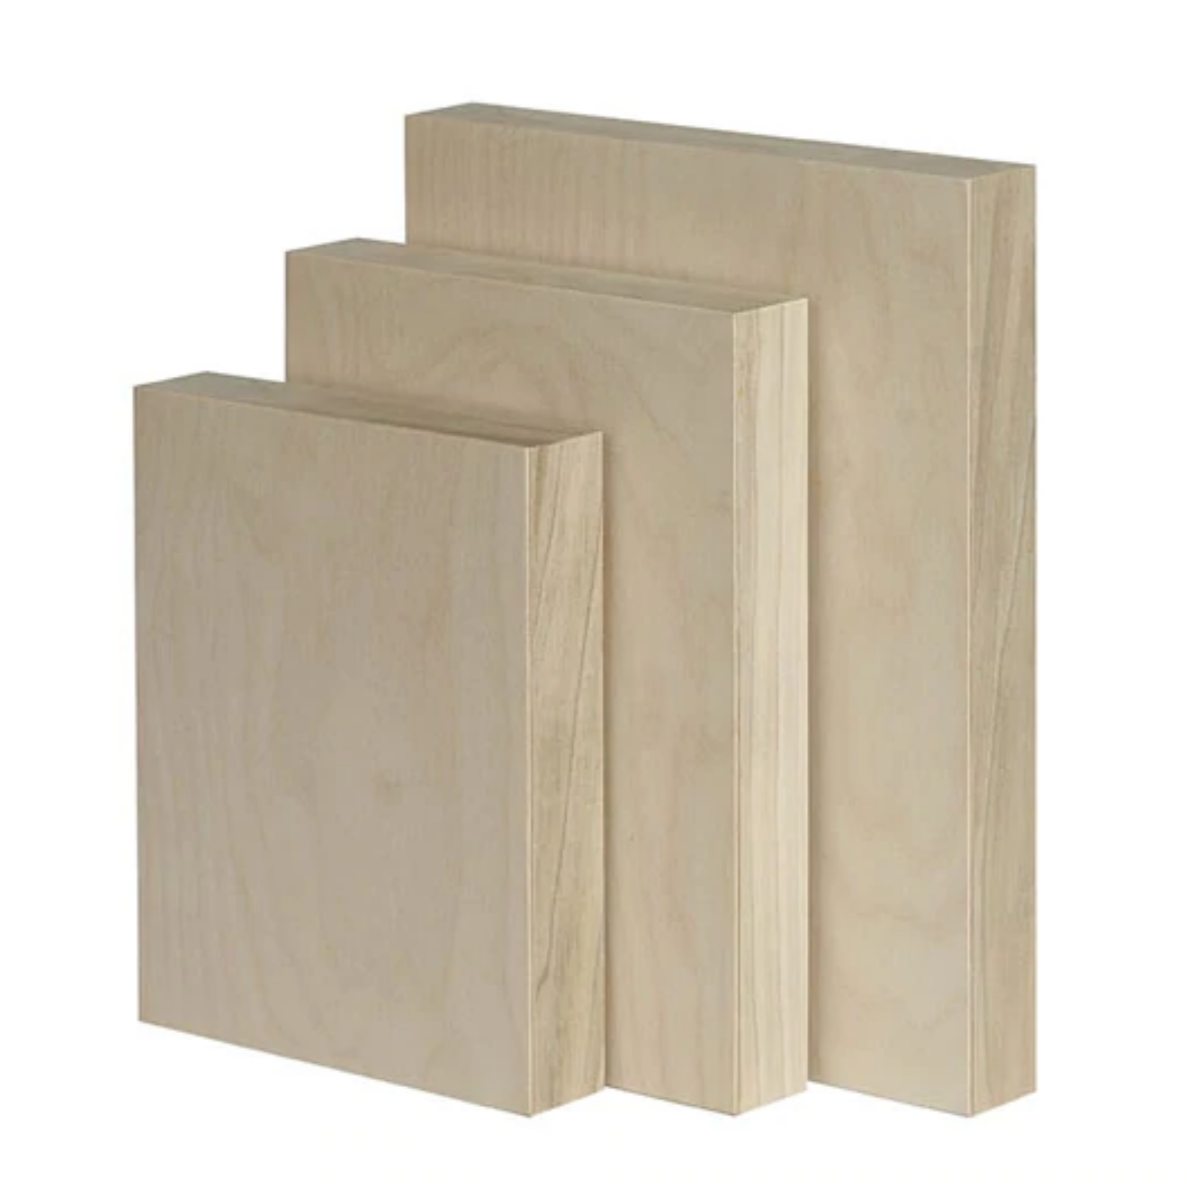 Trekell Cradled Raw Wood Panel (1" Profile)